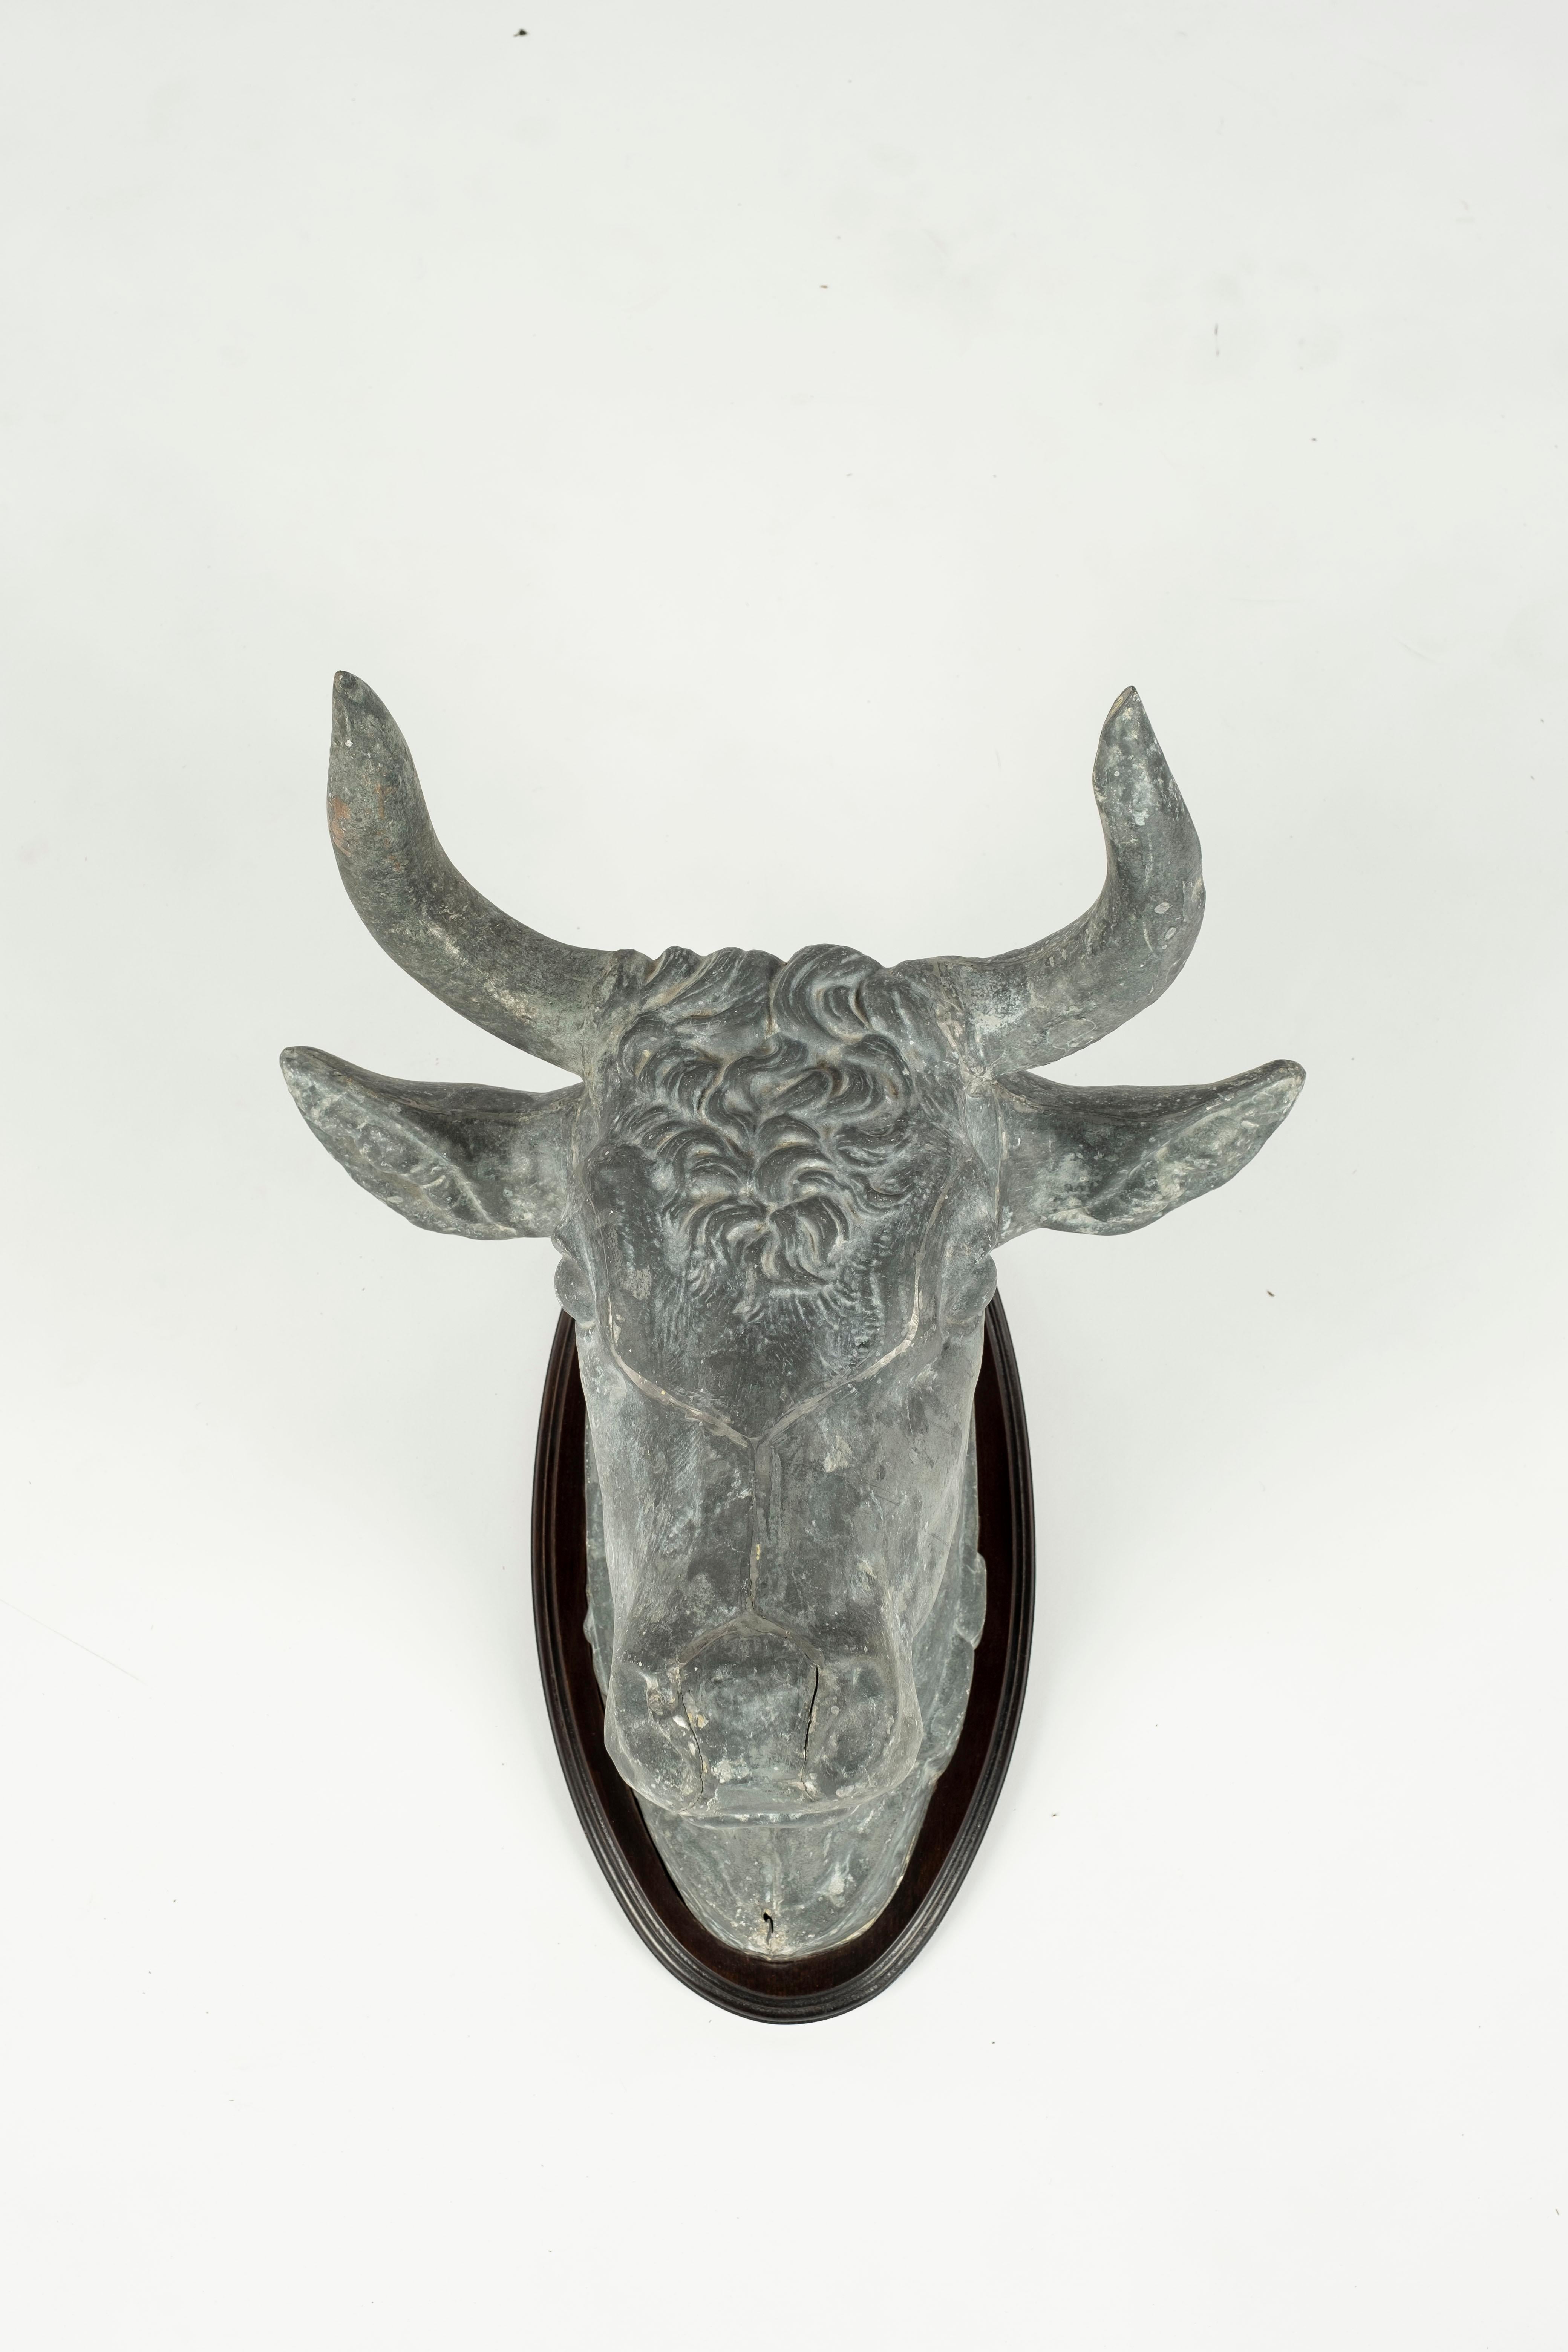 Tête de taureau en zinc utilisée à l'origine comme enseigne de boucherie en France. De beaux détails au niveau du visage. La tête a été montée sur une plaque en bois à des fins d'exposition.